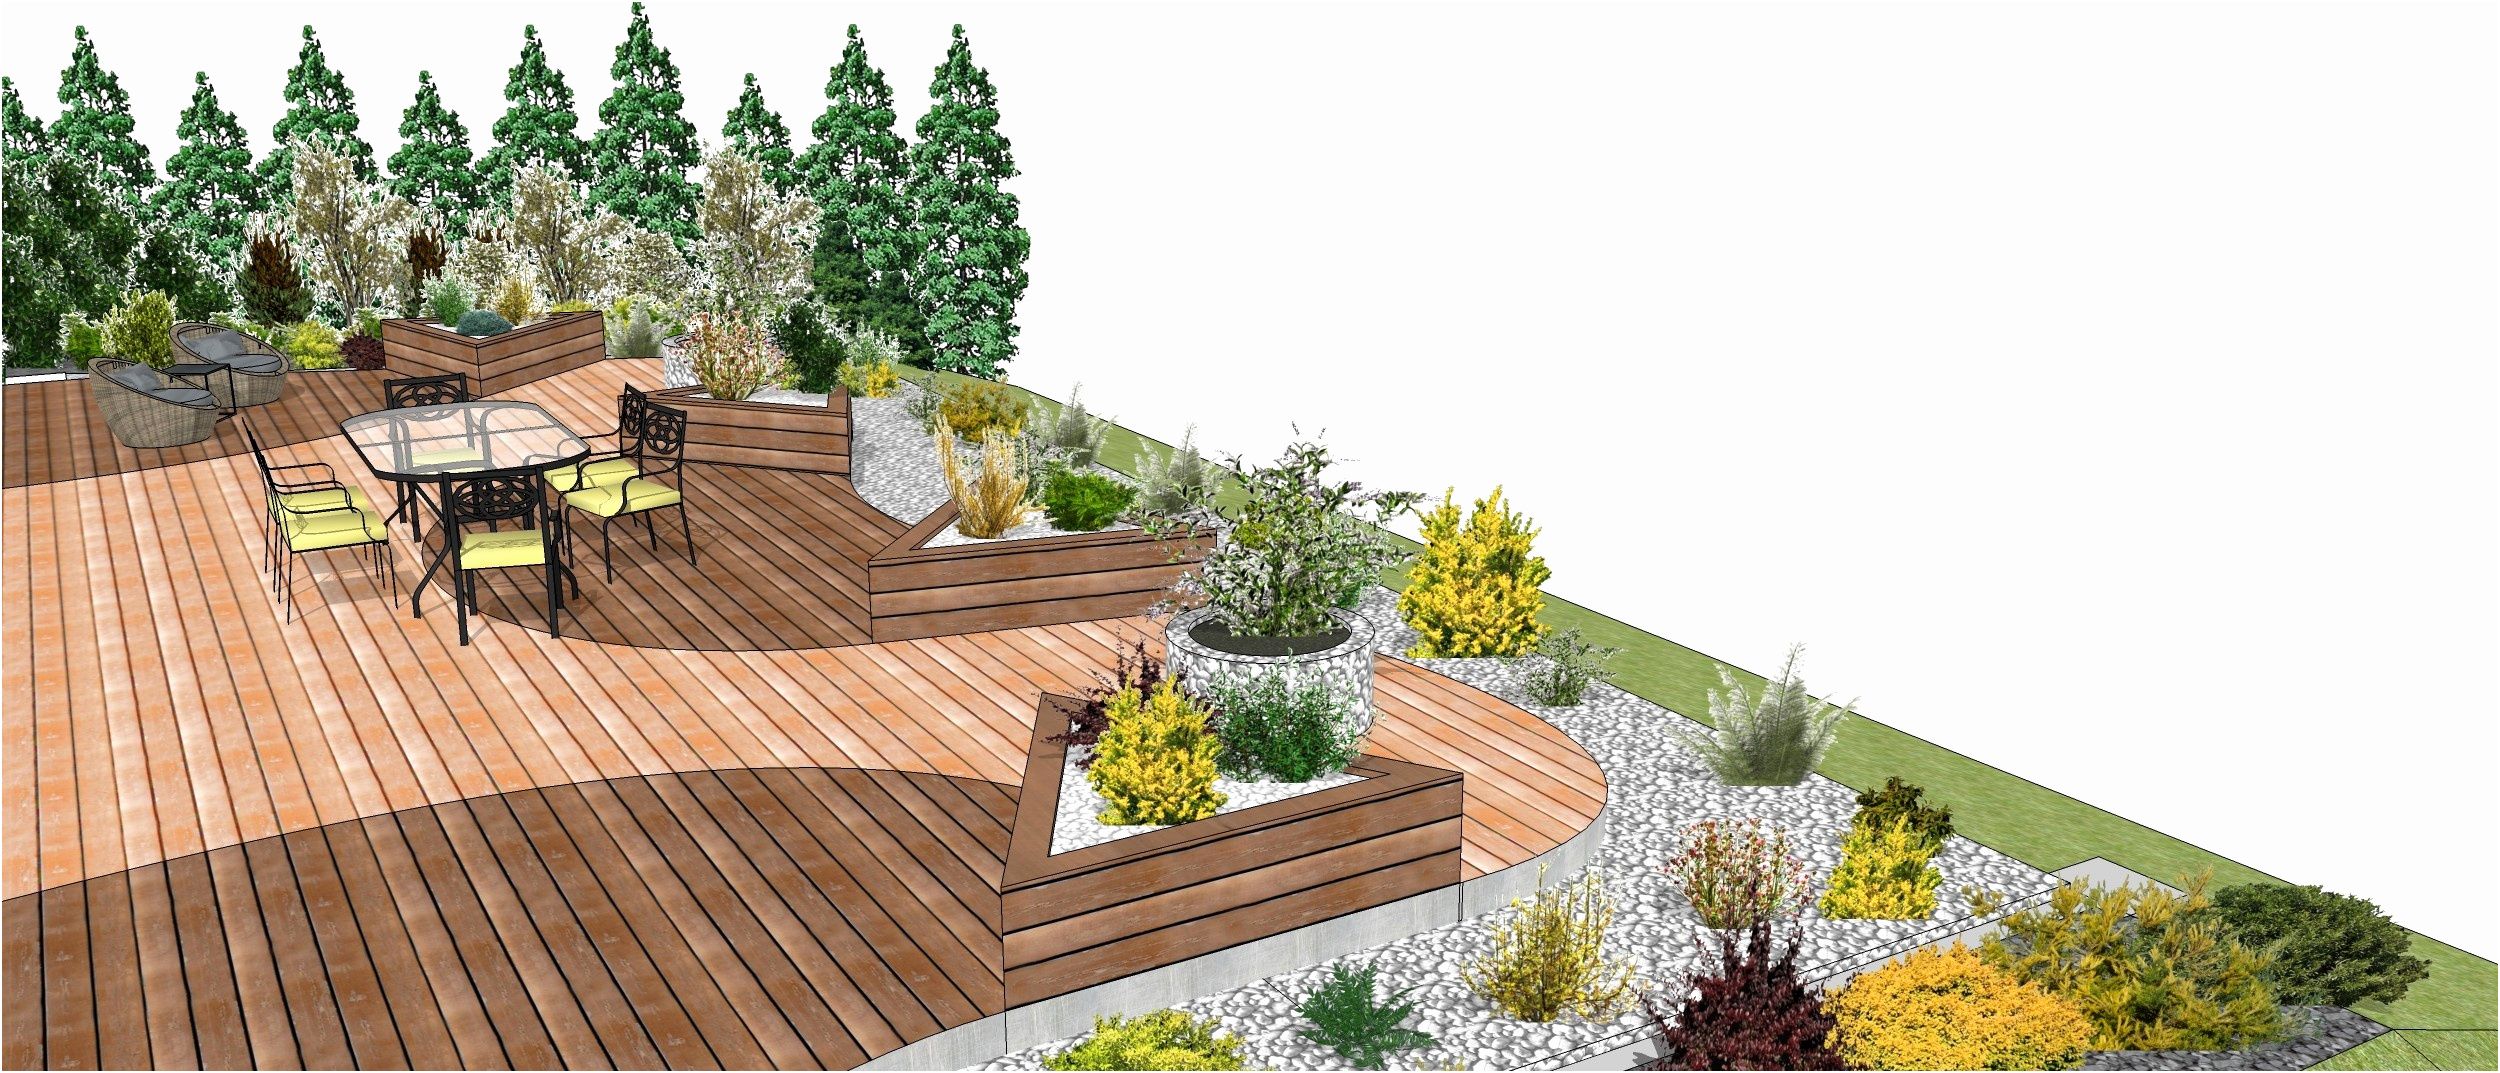 Idee Amenagement Jardin Unique Idee Jardin Sans Entretien Inspirant Outil De Jardinage